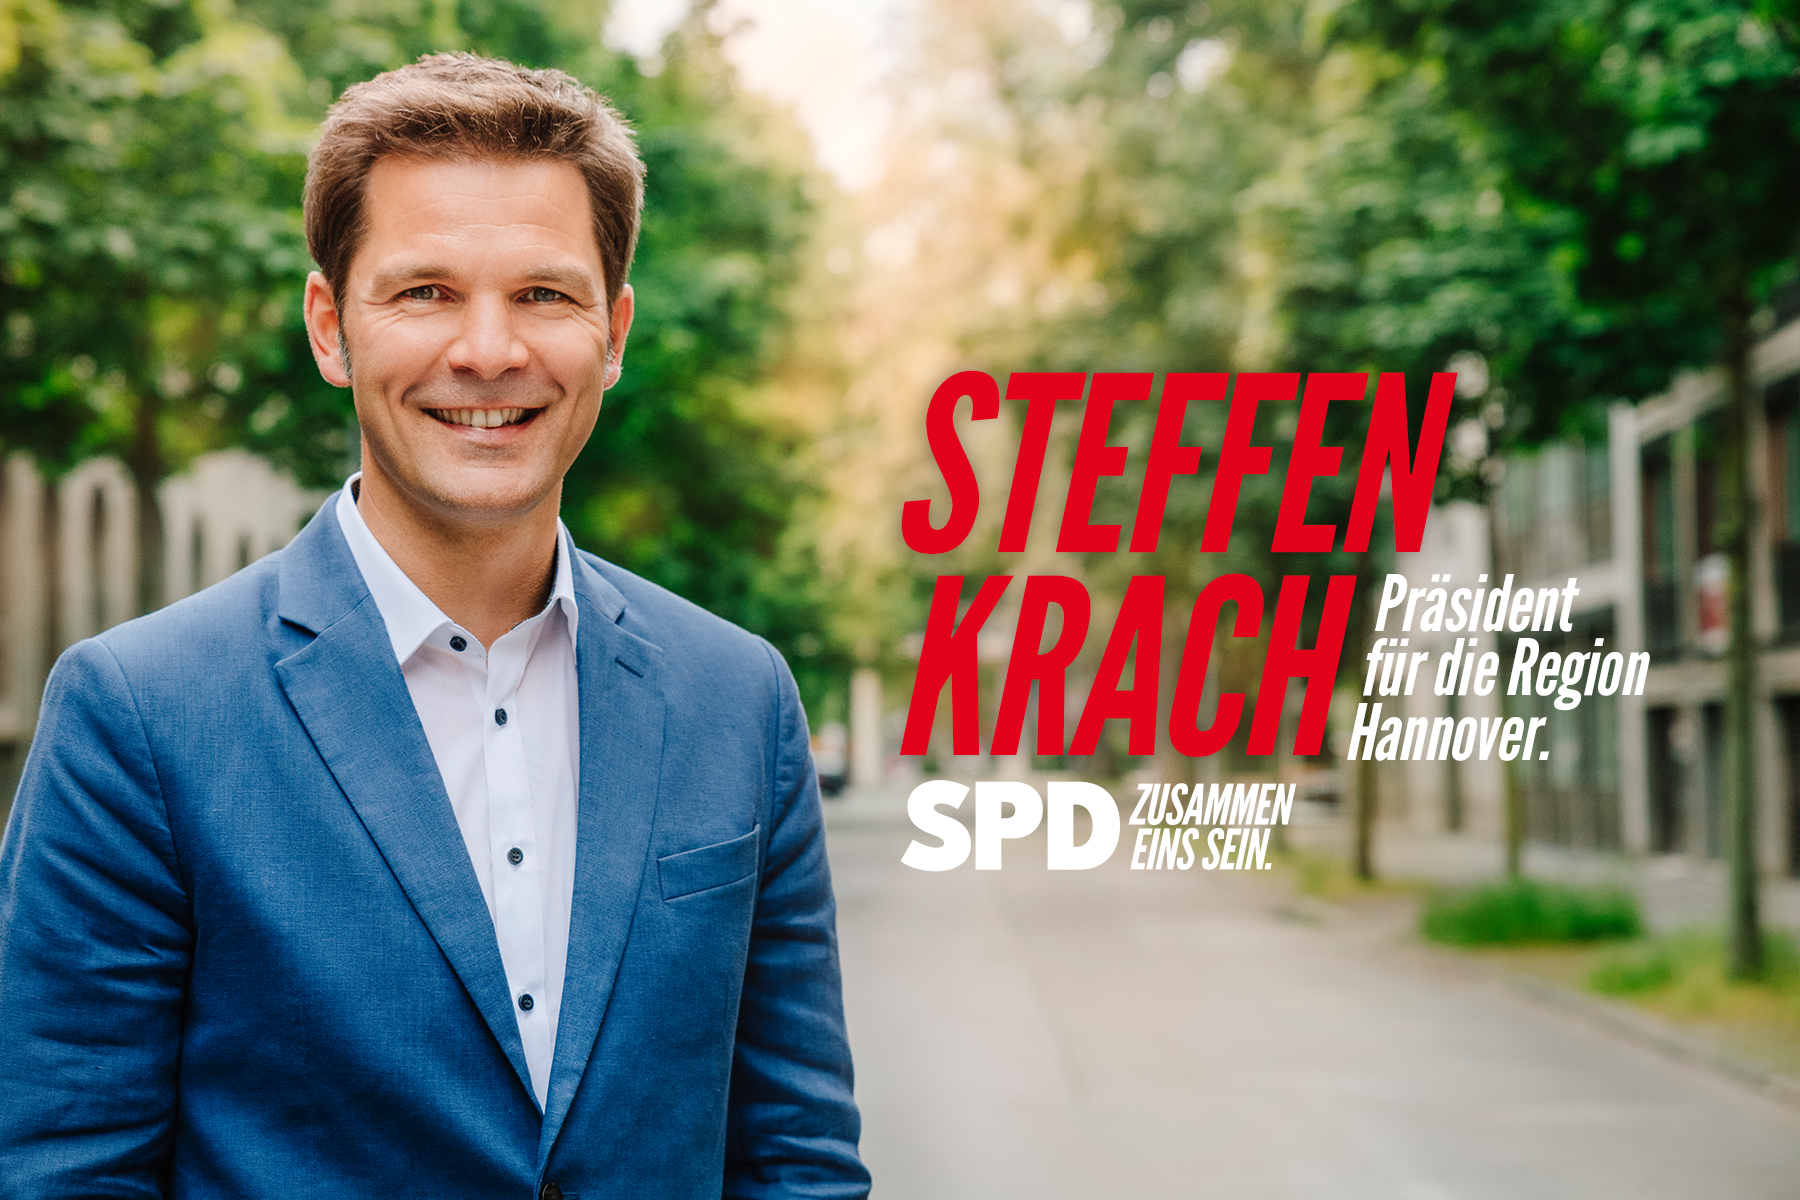 (c) Steffen-krach.de